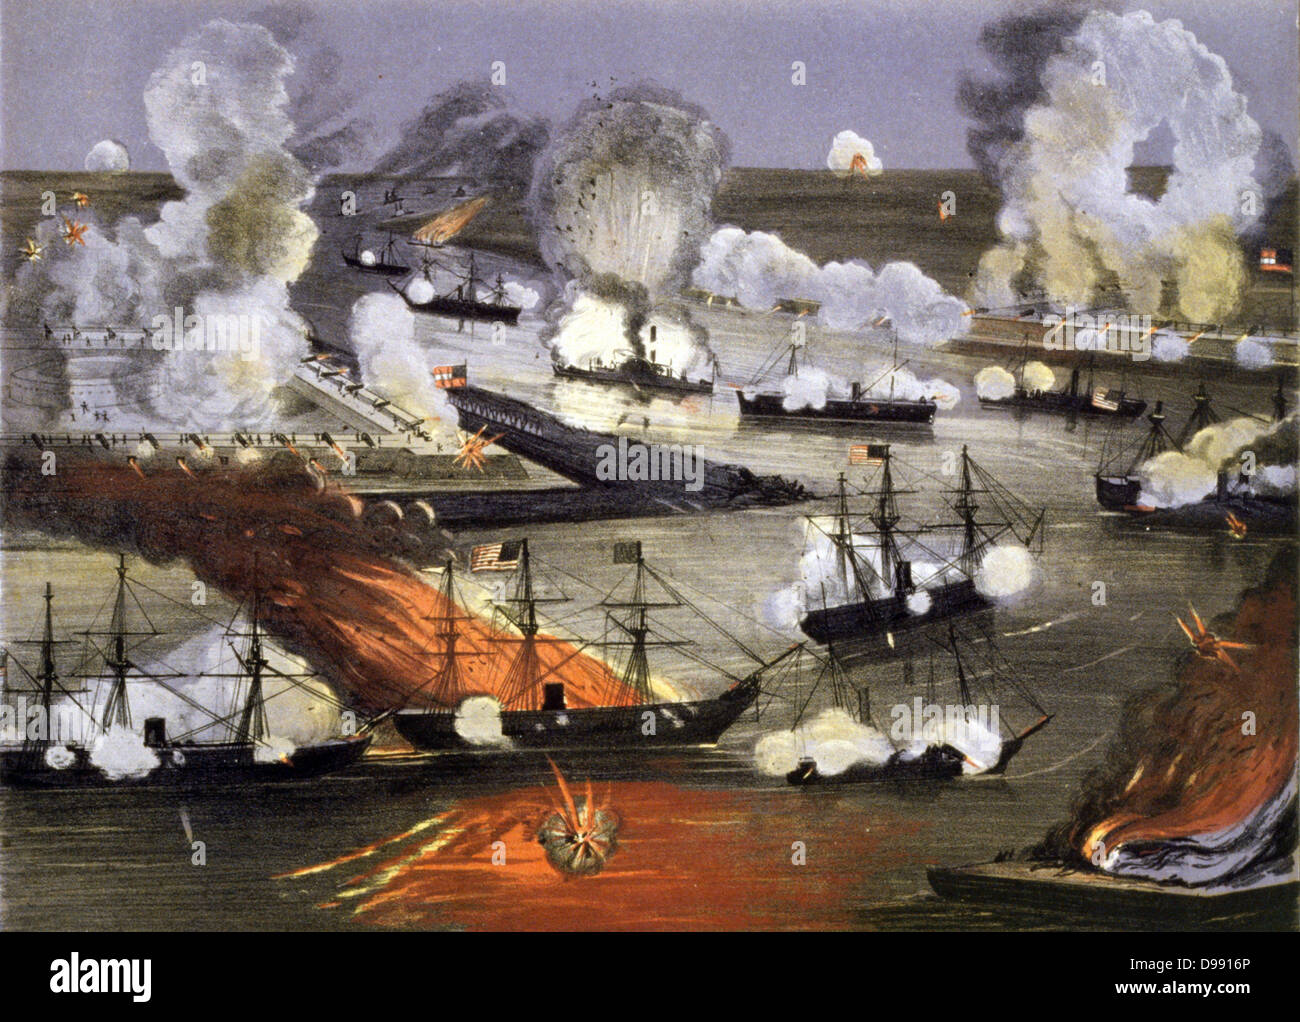 American Civil War 1861-1865 : La capture de la Nouvelle Orléans du 25 avril au 1 mai 1862. La capture de la plus grande ville de la Confédération par l'Union européenne a été un tournant dans la guerre. Des coups de feu de la bataille navale de navires à vapeur explosion Banque D'Images